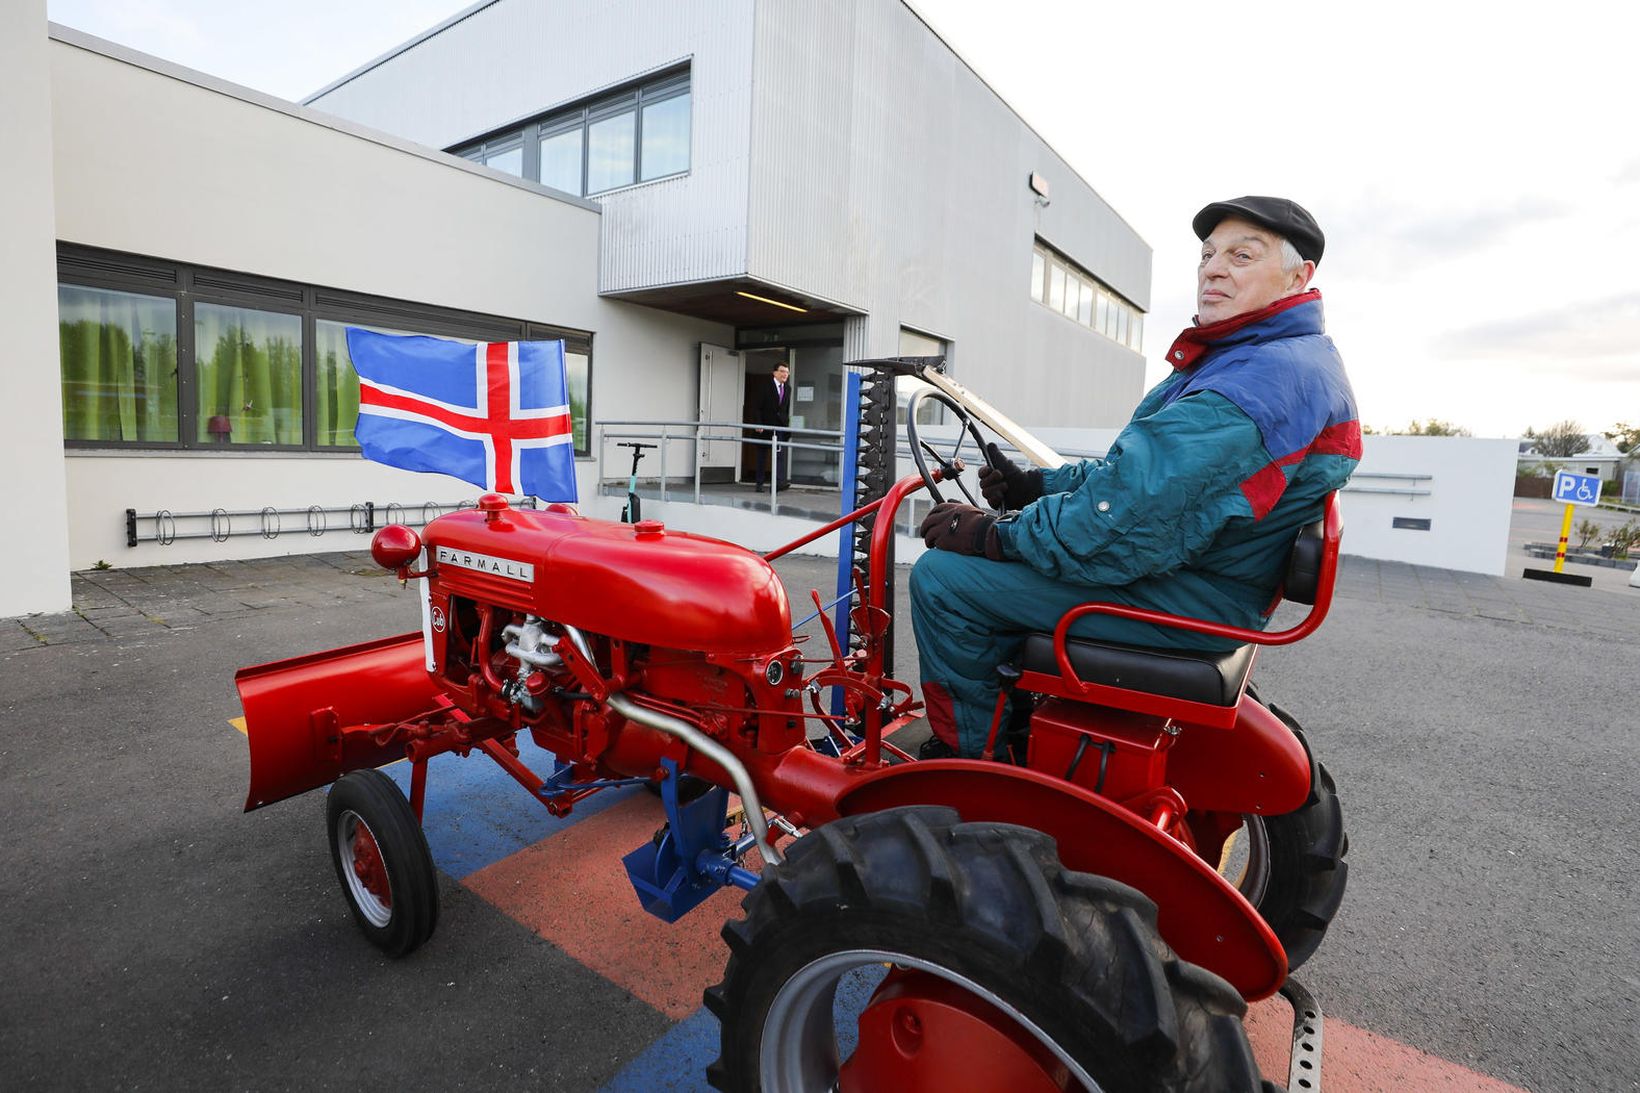 Sigurjón Einarsson mætti á traktor á kjörstað í dag.